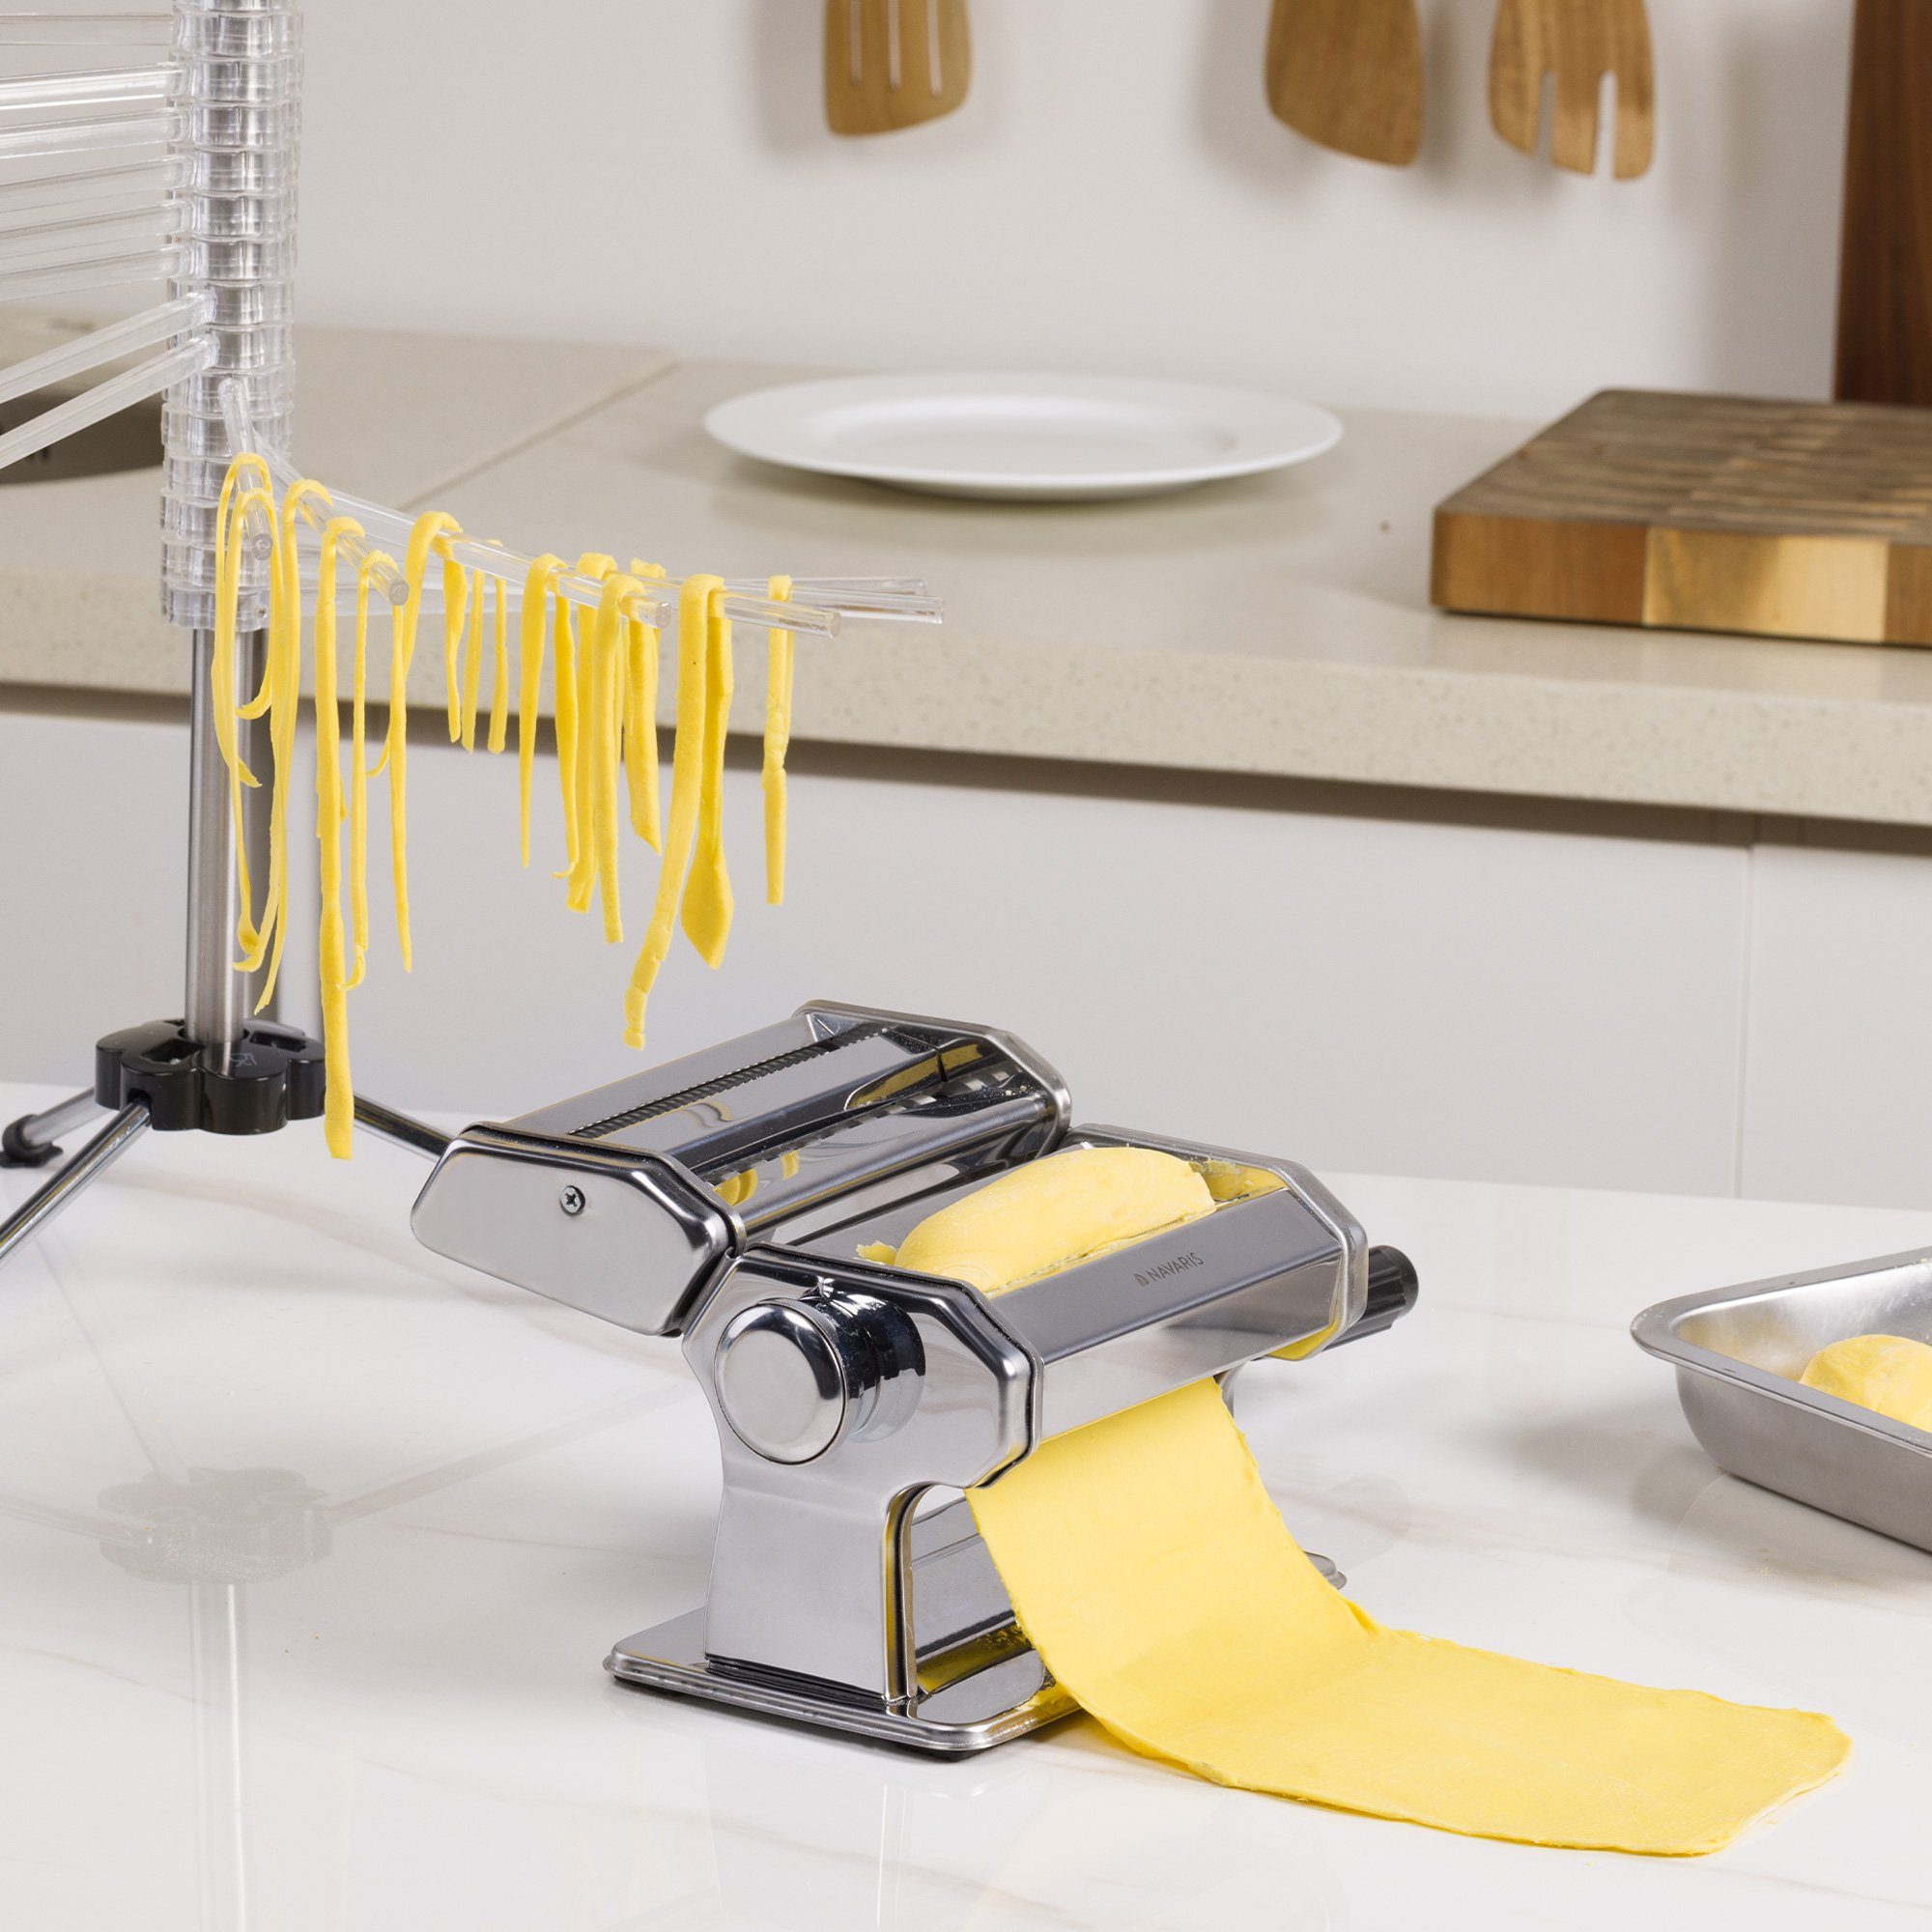 Navaris mit für Spaghetti - Nudelmaschine Maschine Holzgriff Pasta Pasta Maker Nudelmaschine